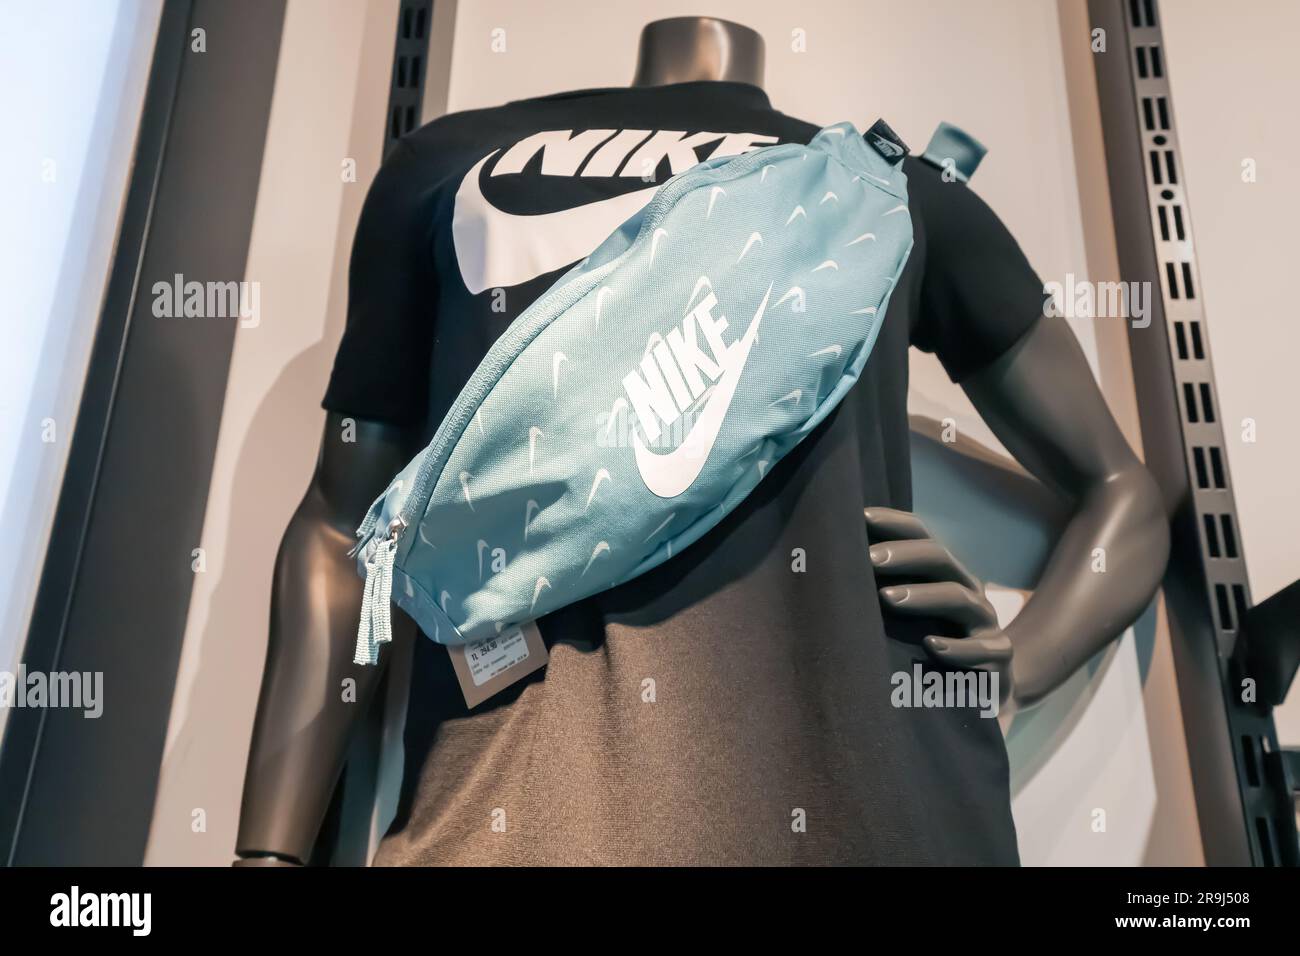 17 agosto 2022, Antalya, Turchia: Abbigliamento e scarpe sportive Nike in vendita presso il negozio del marchio Foto Stock